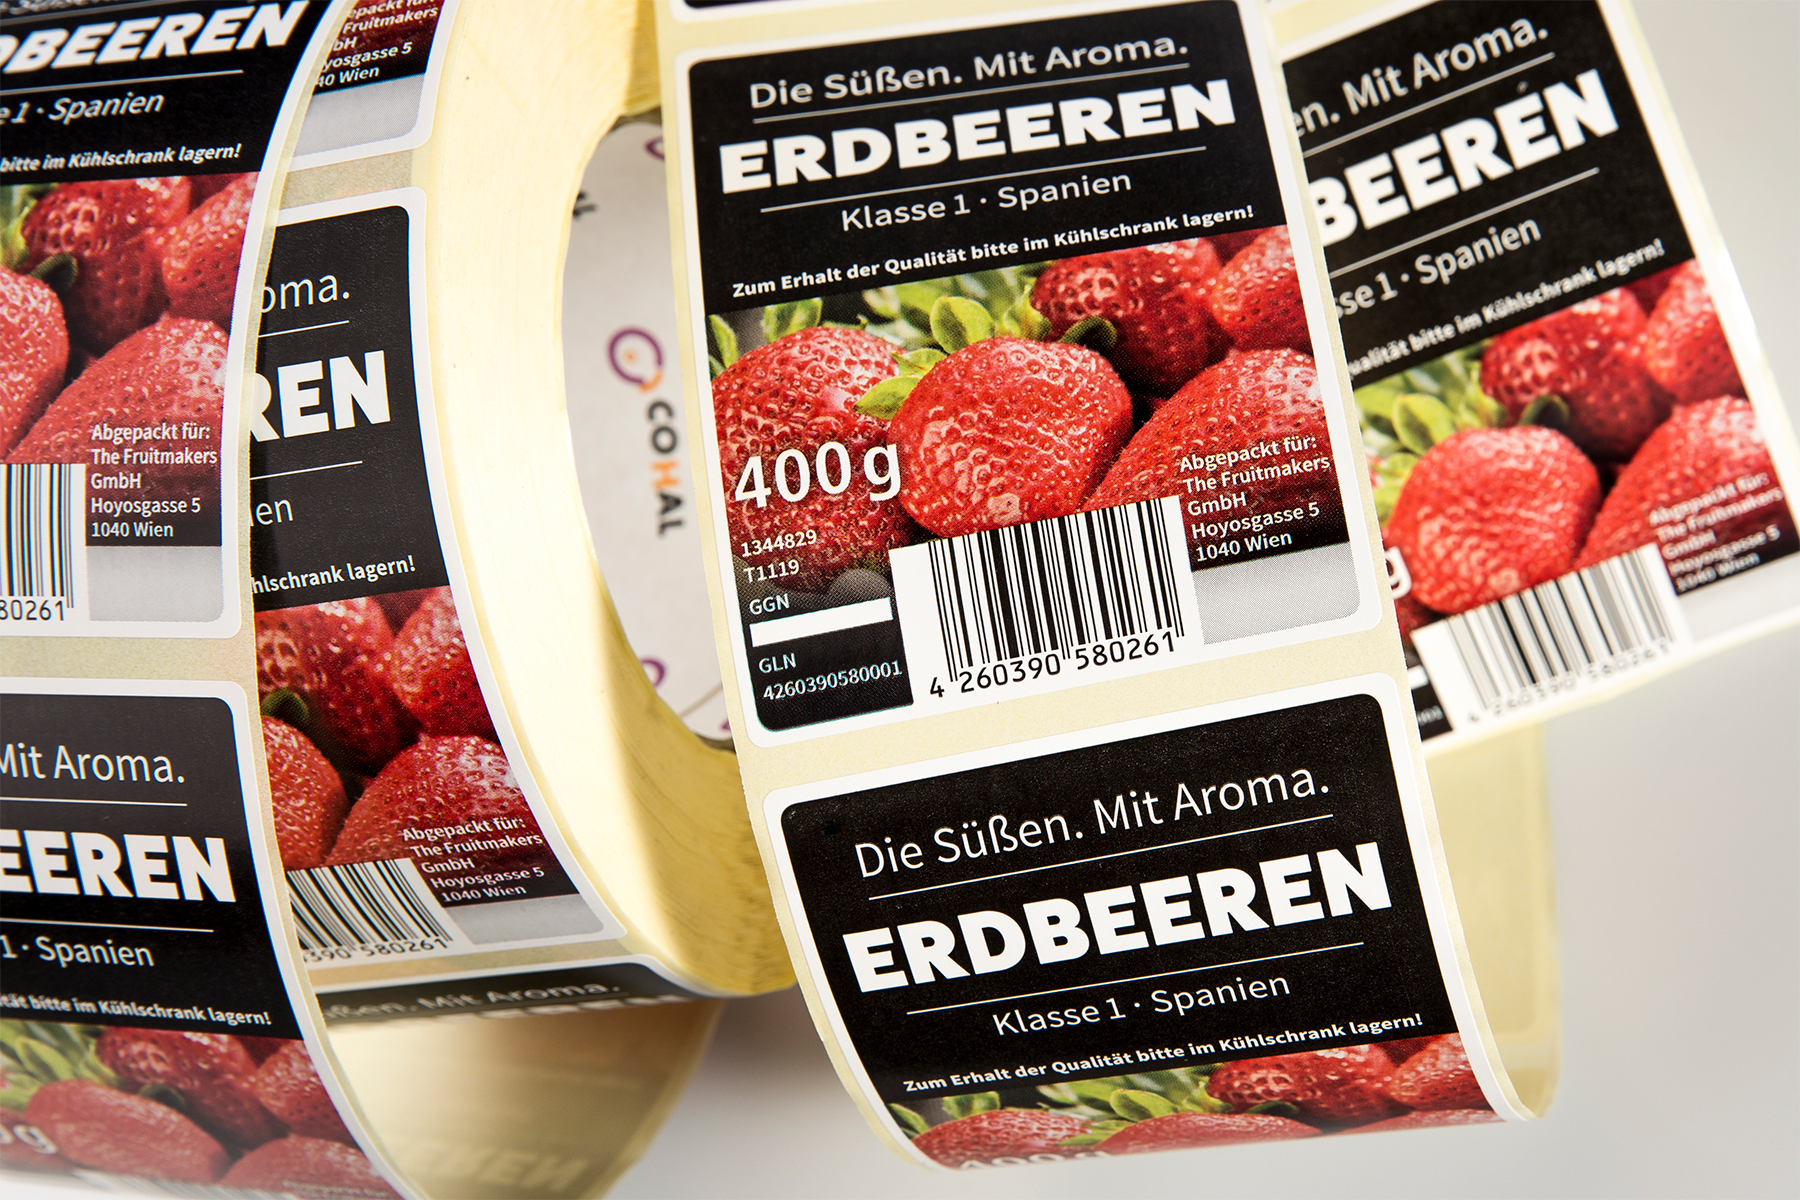 Etiqueta fresas Edbeeren